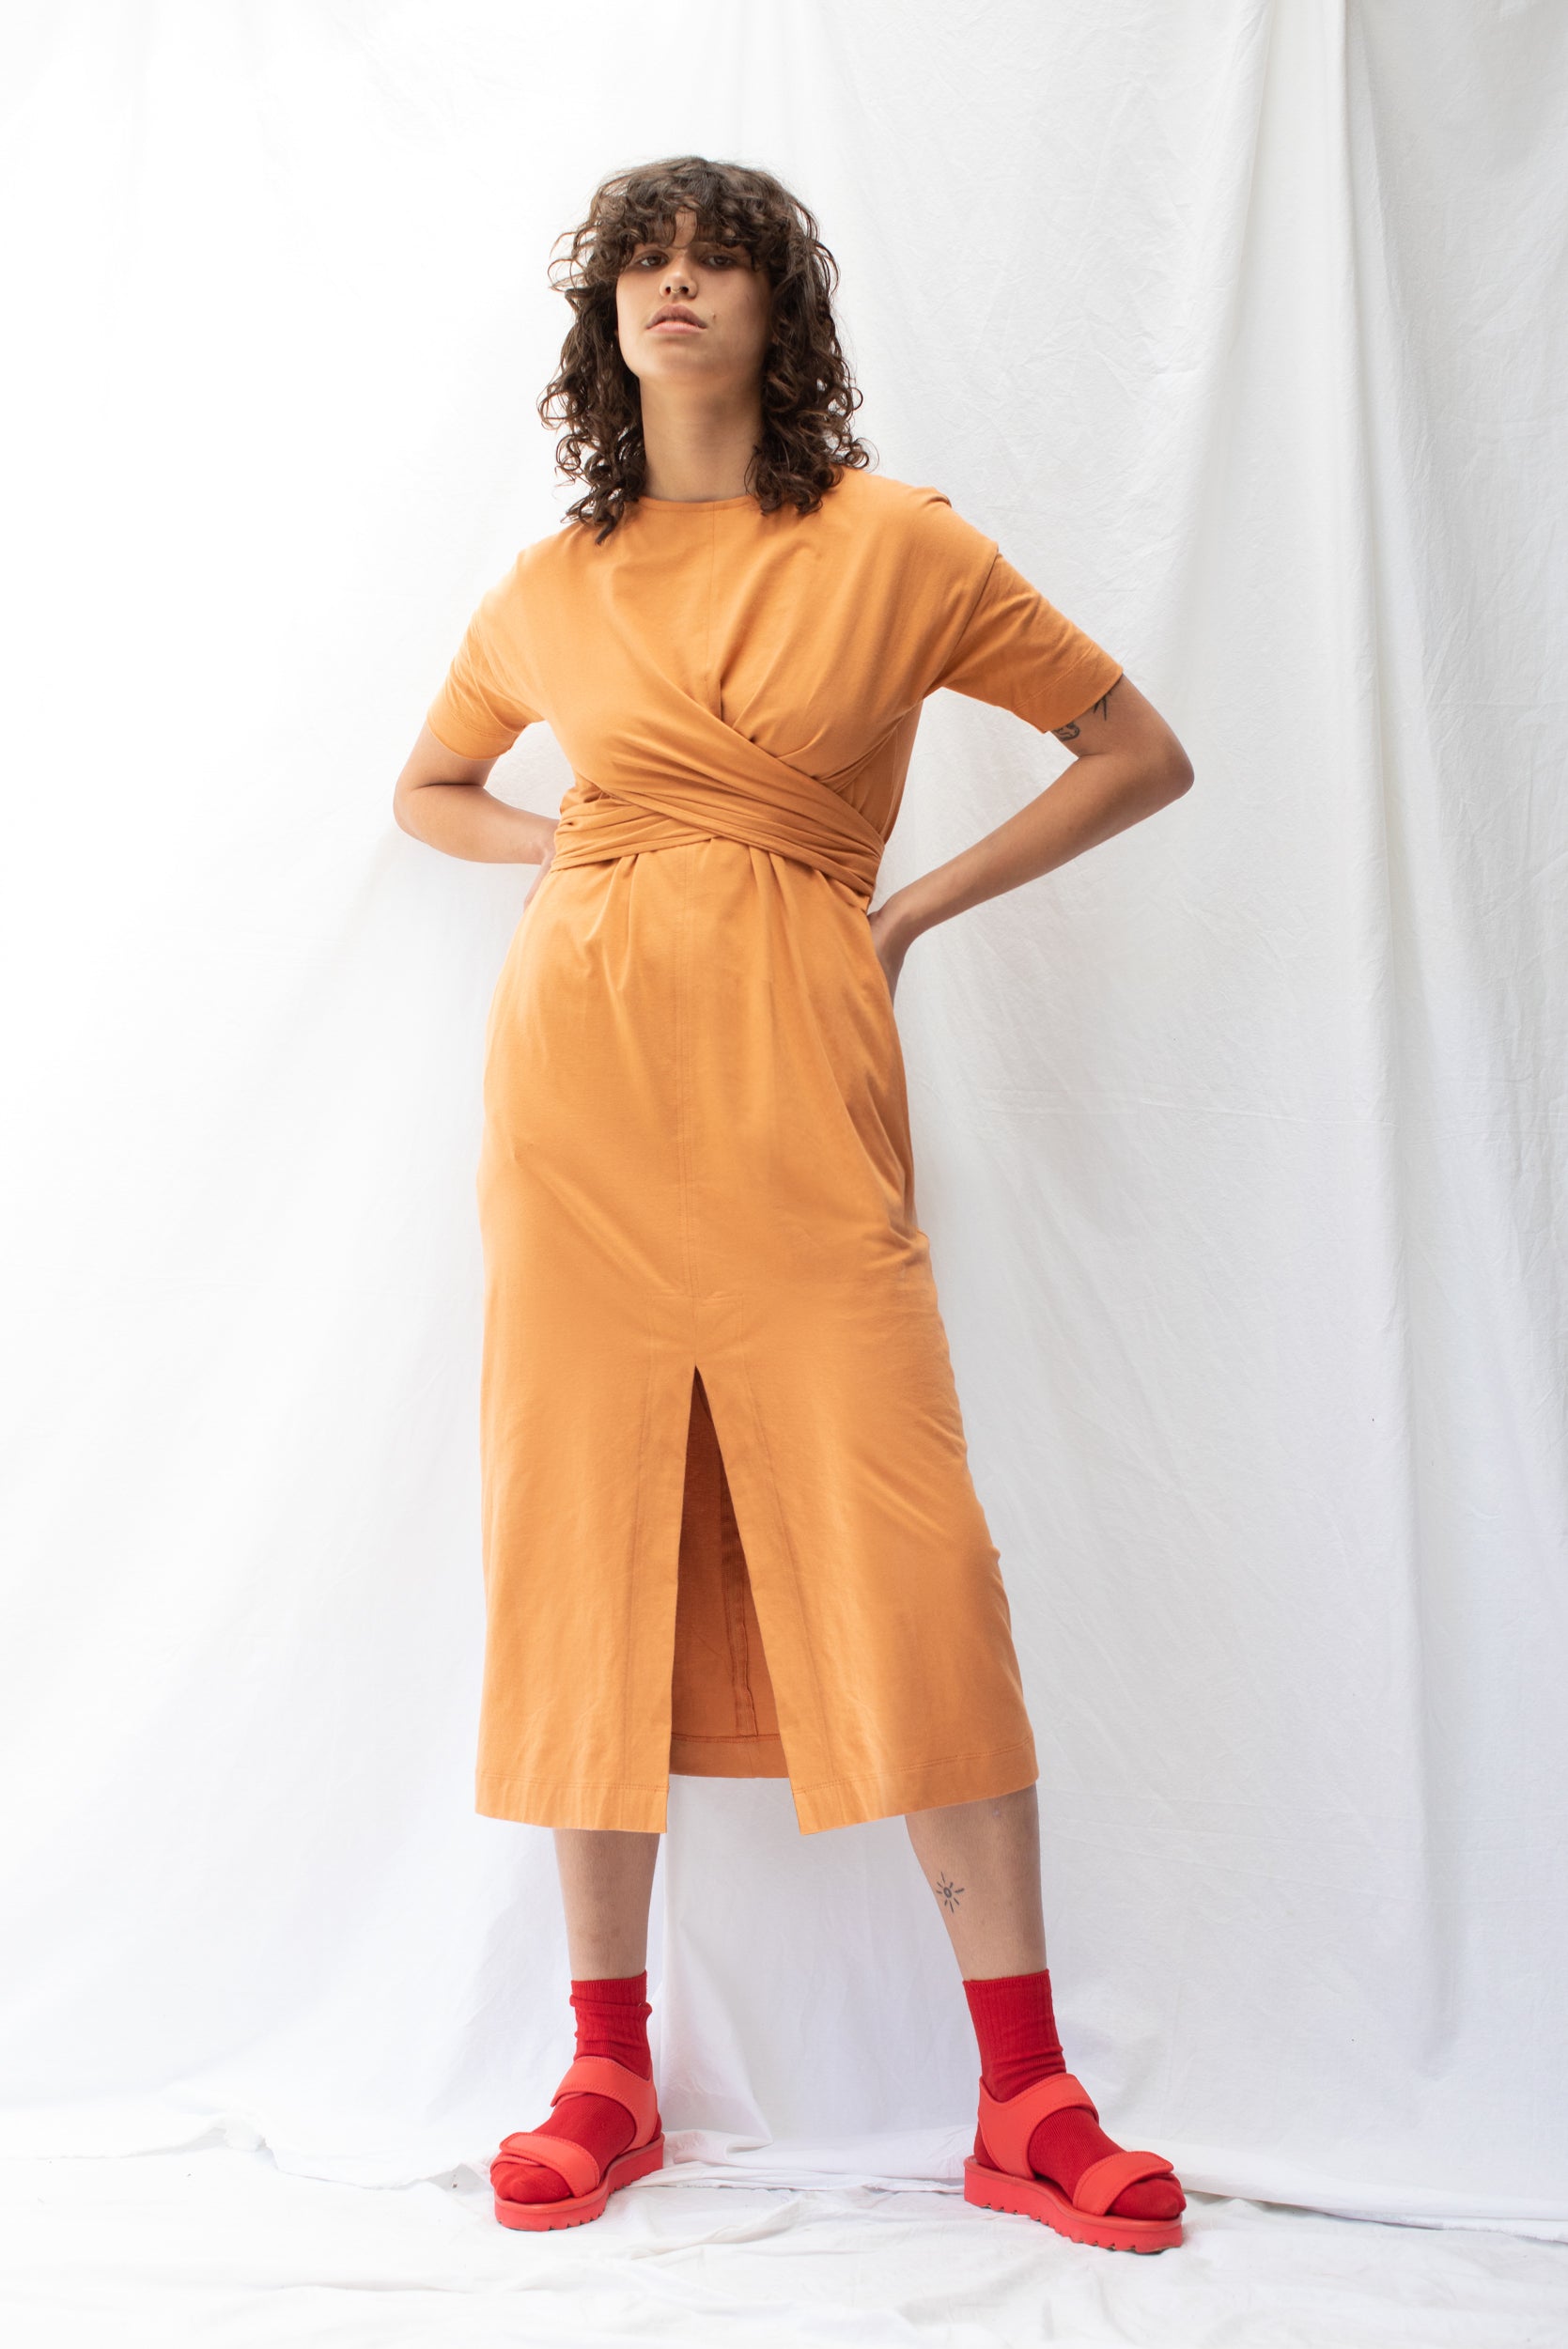 Twist Dress | Papaya (L,XL only)